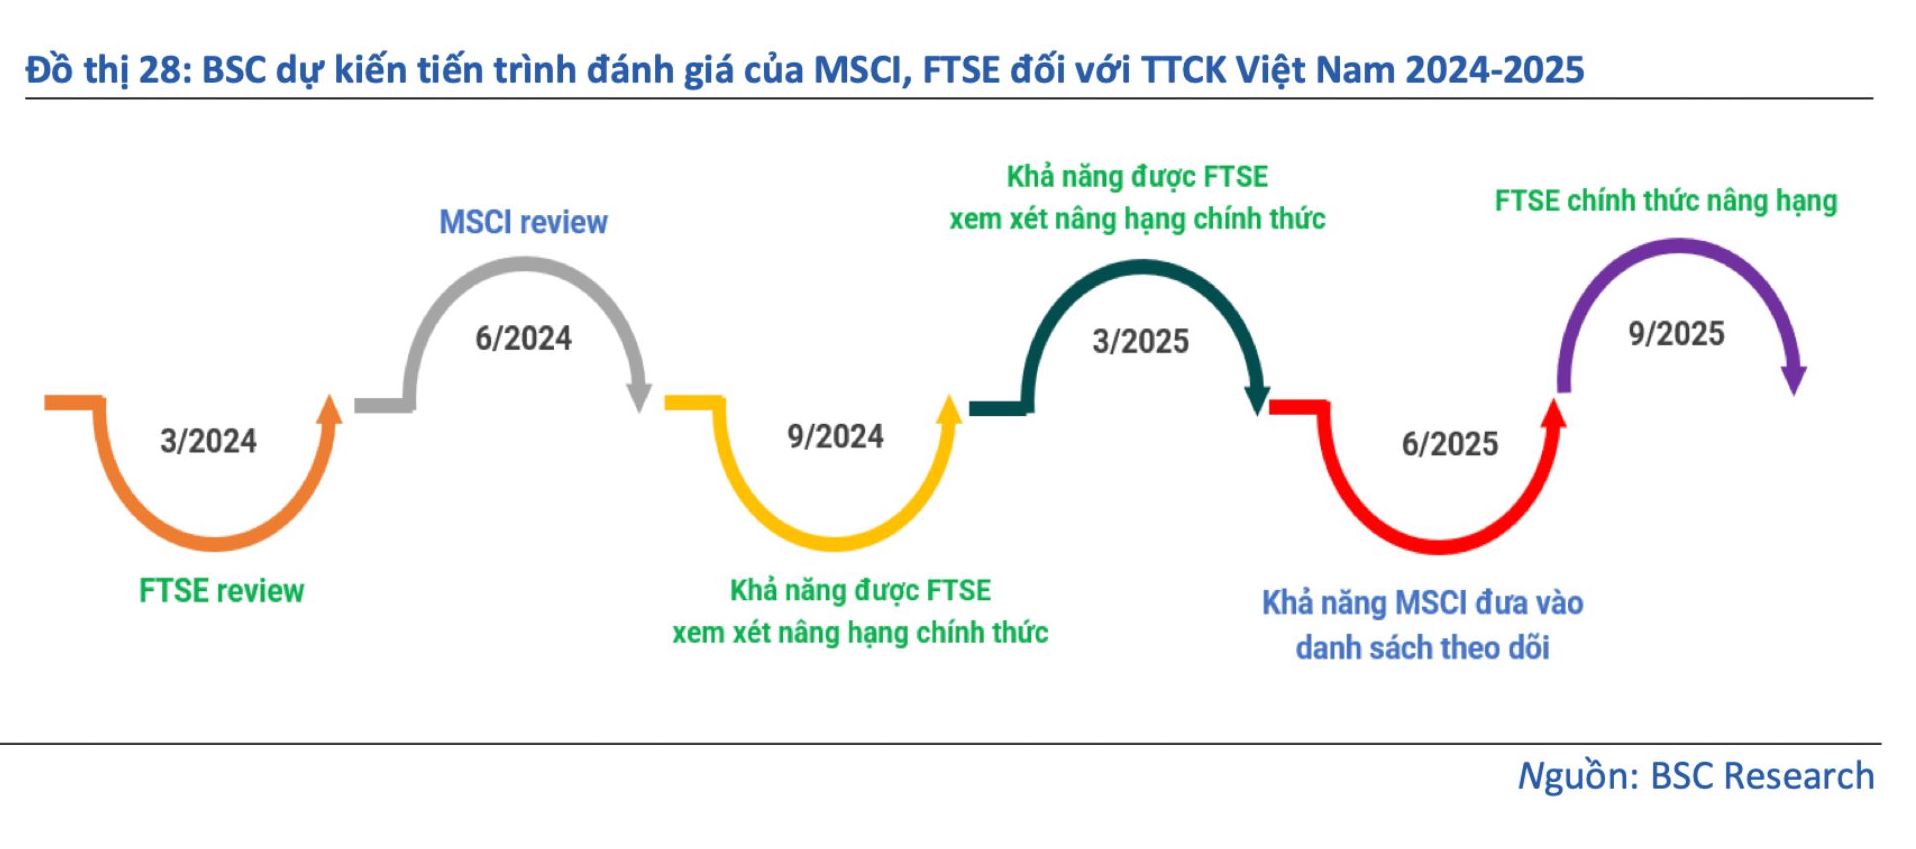 BSC dự kiến tiến trình đánh giá của MSCI, FTSE đối với thị trường chứng khoán Việt Nam 2024 - 2025. Ảnh: BSC